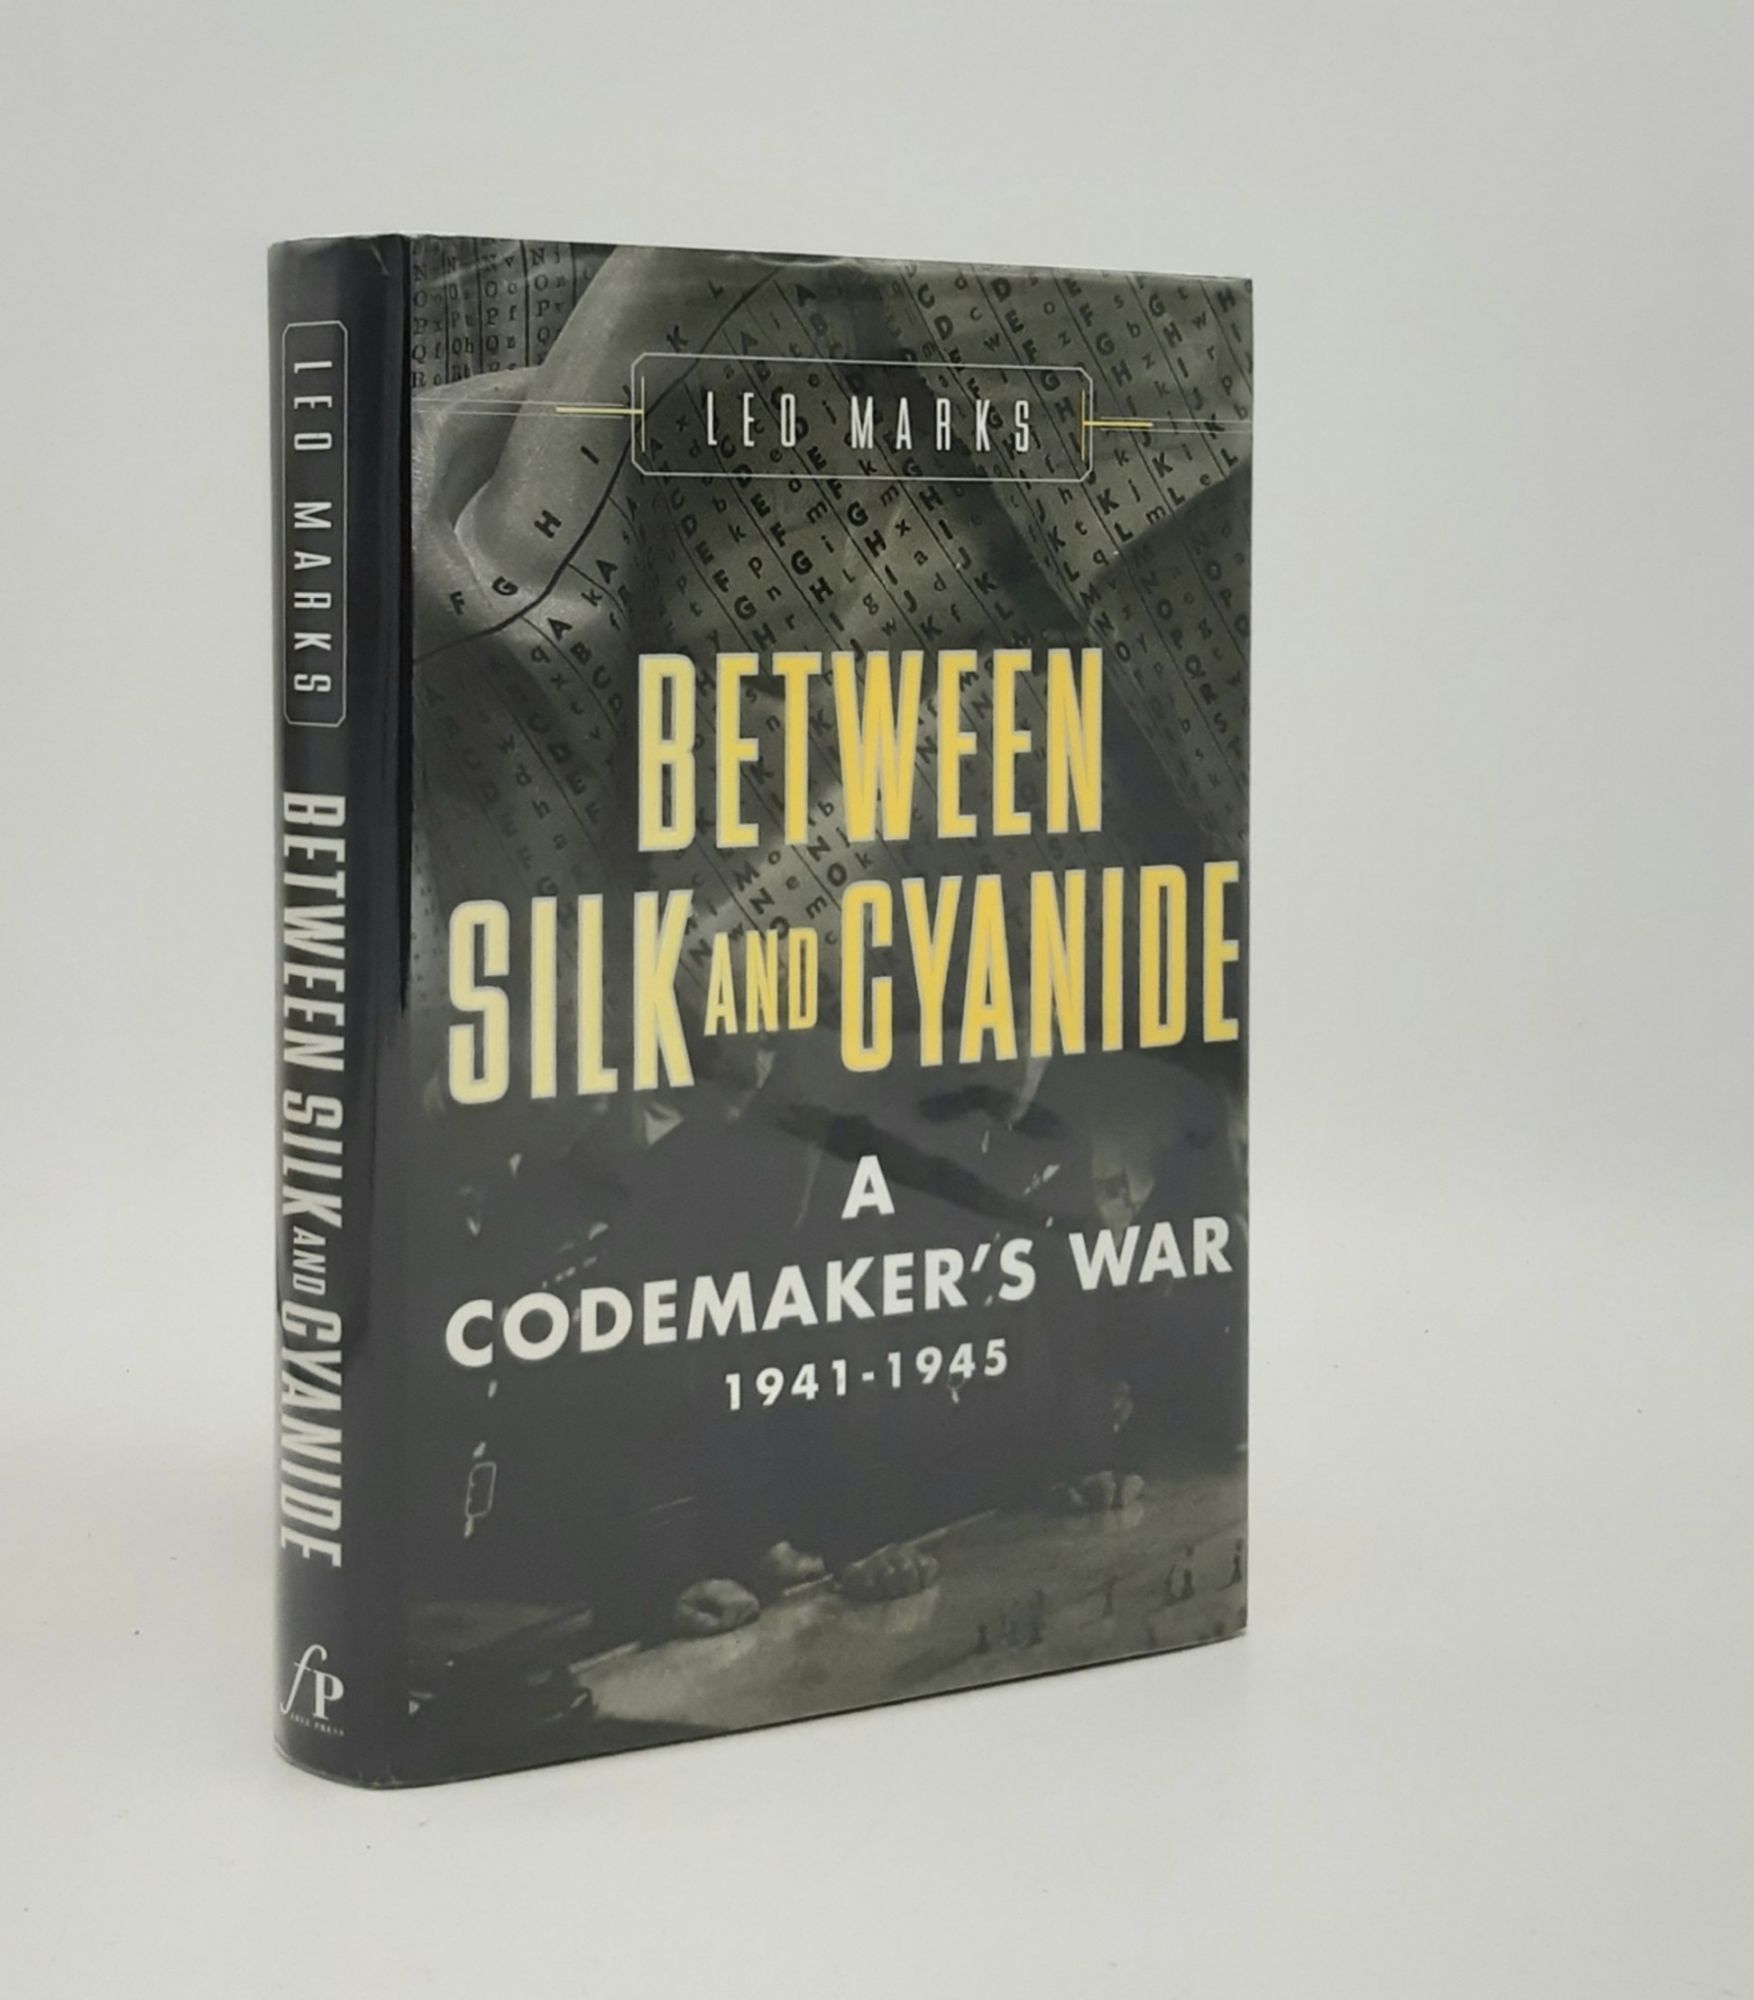 BETWEEN SILK AND CYANIDE A Codemaker's War 1941-1945 - MARKS Leo